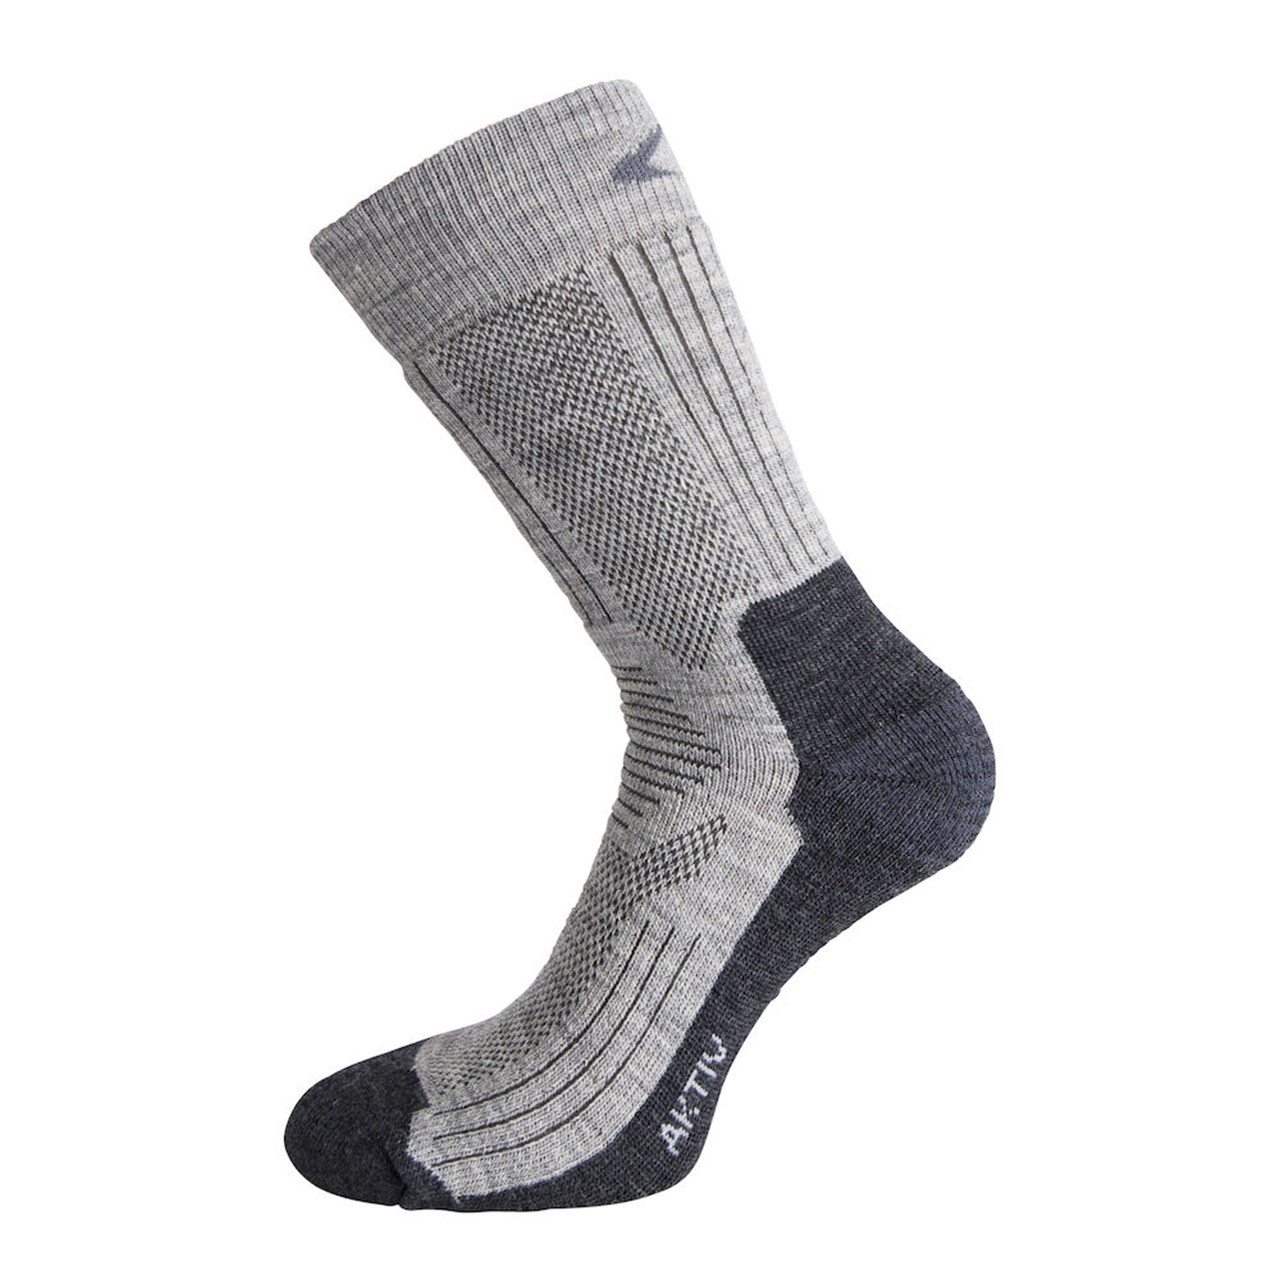 Ulvang Rav Aktiv Sock Grey Melange/Charcoal Melange